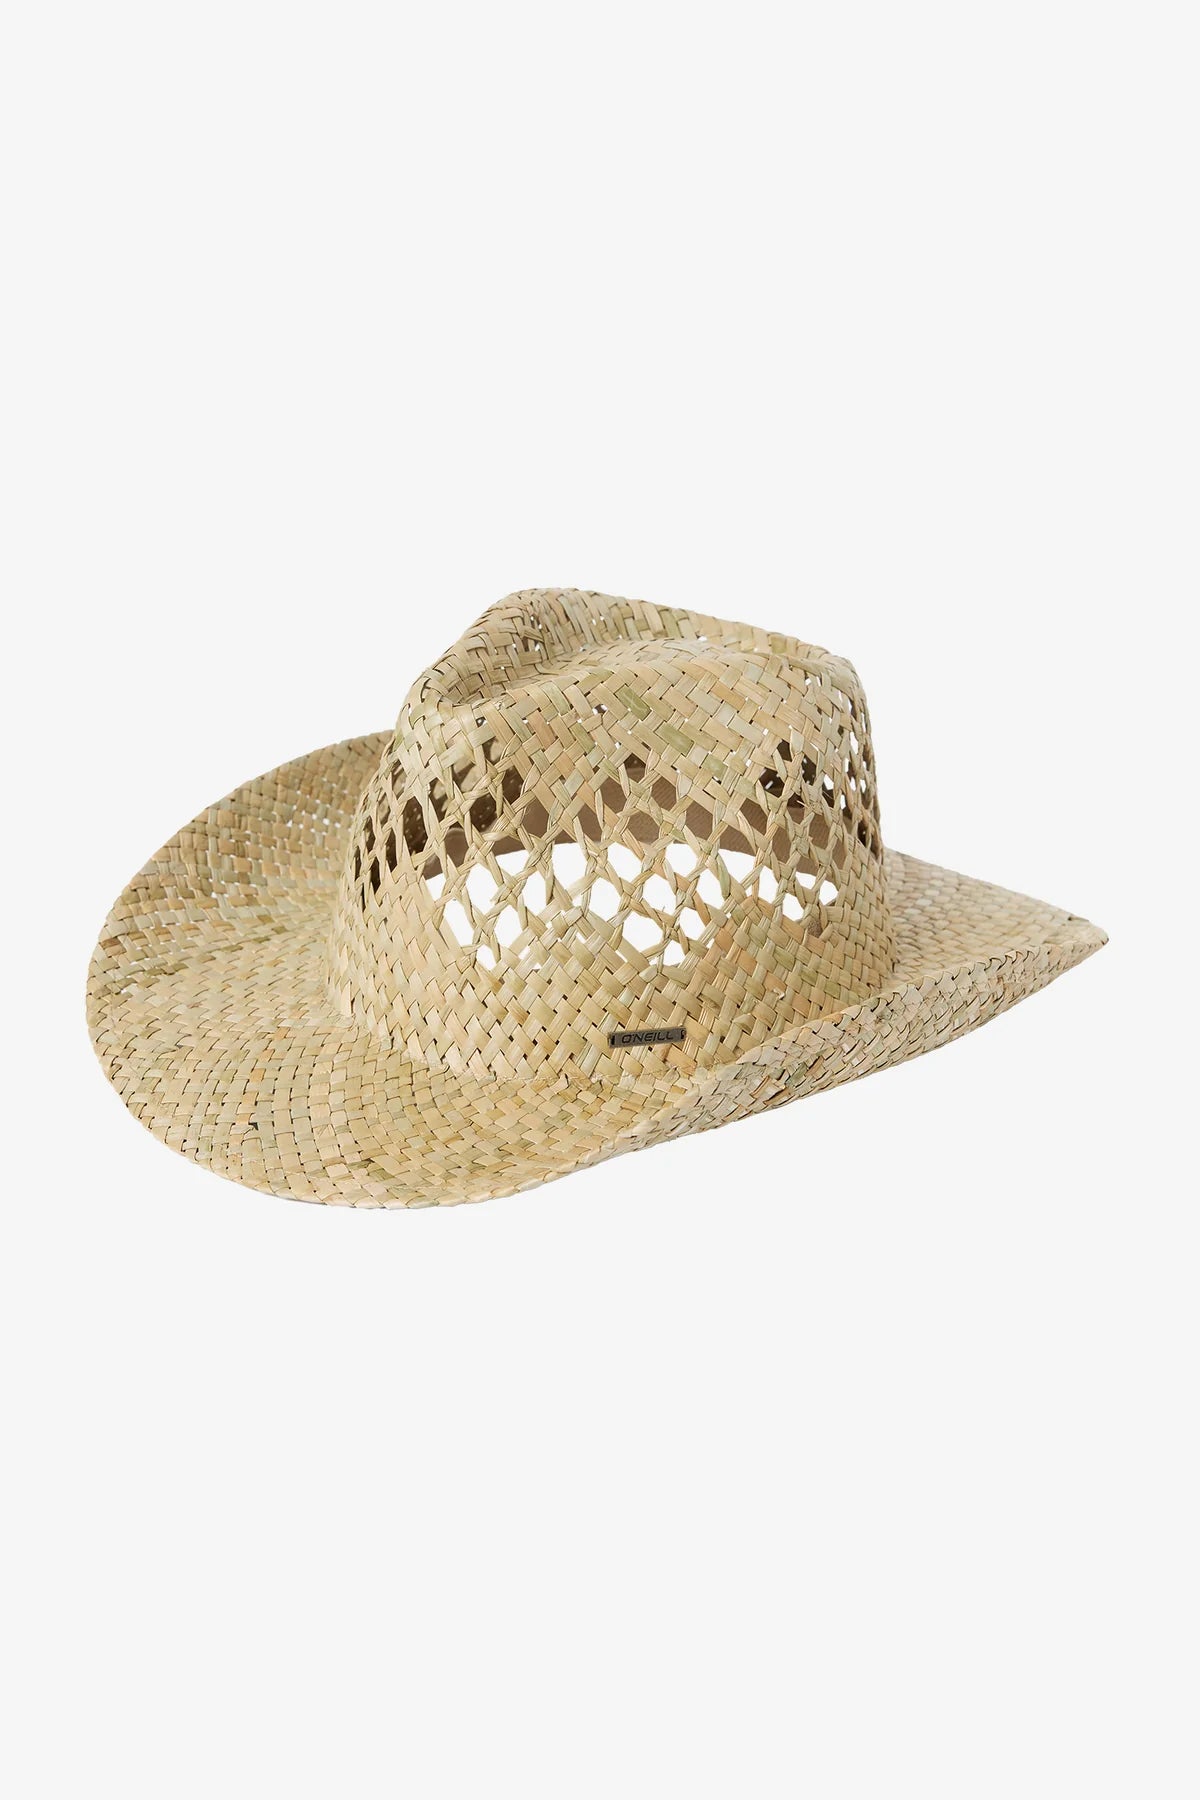 O'Neill Indio Sun Hat